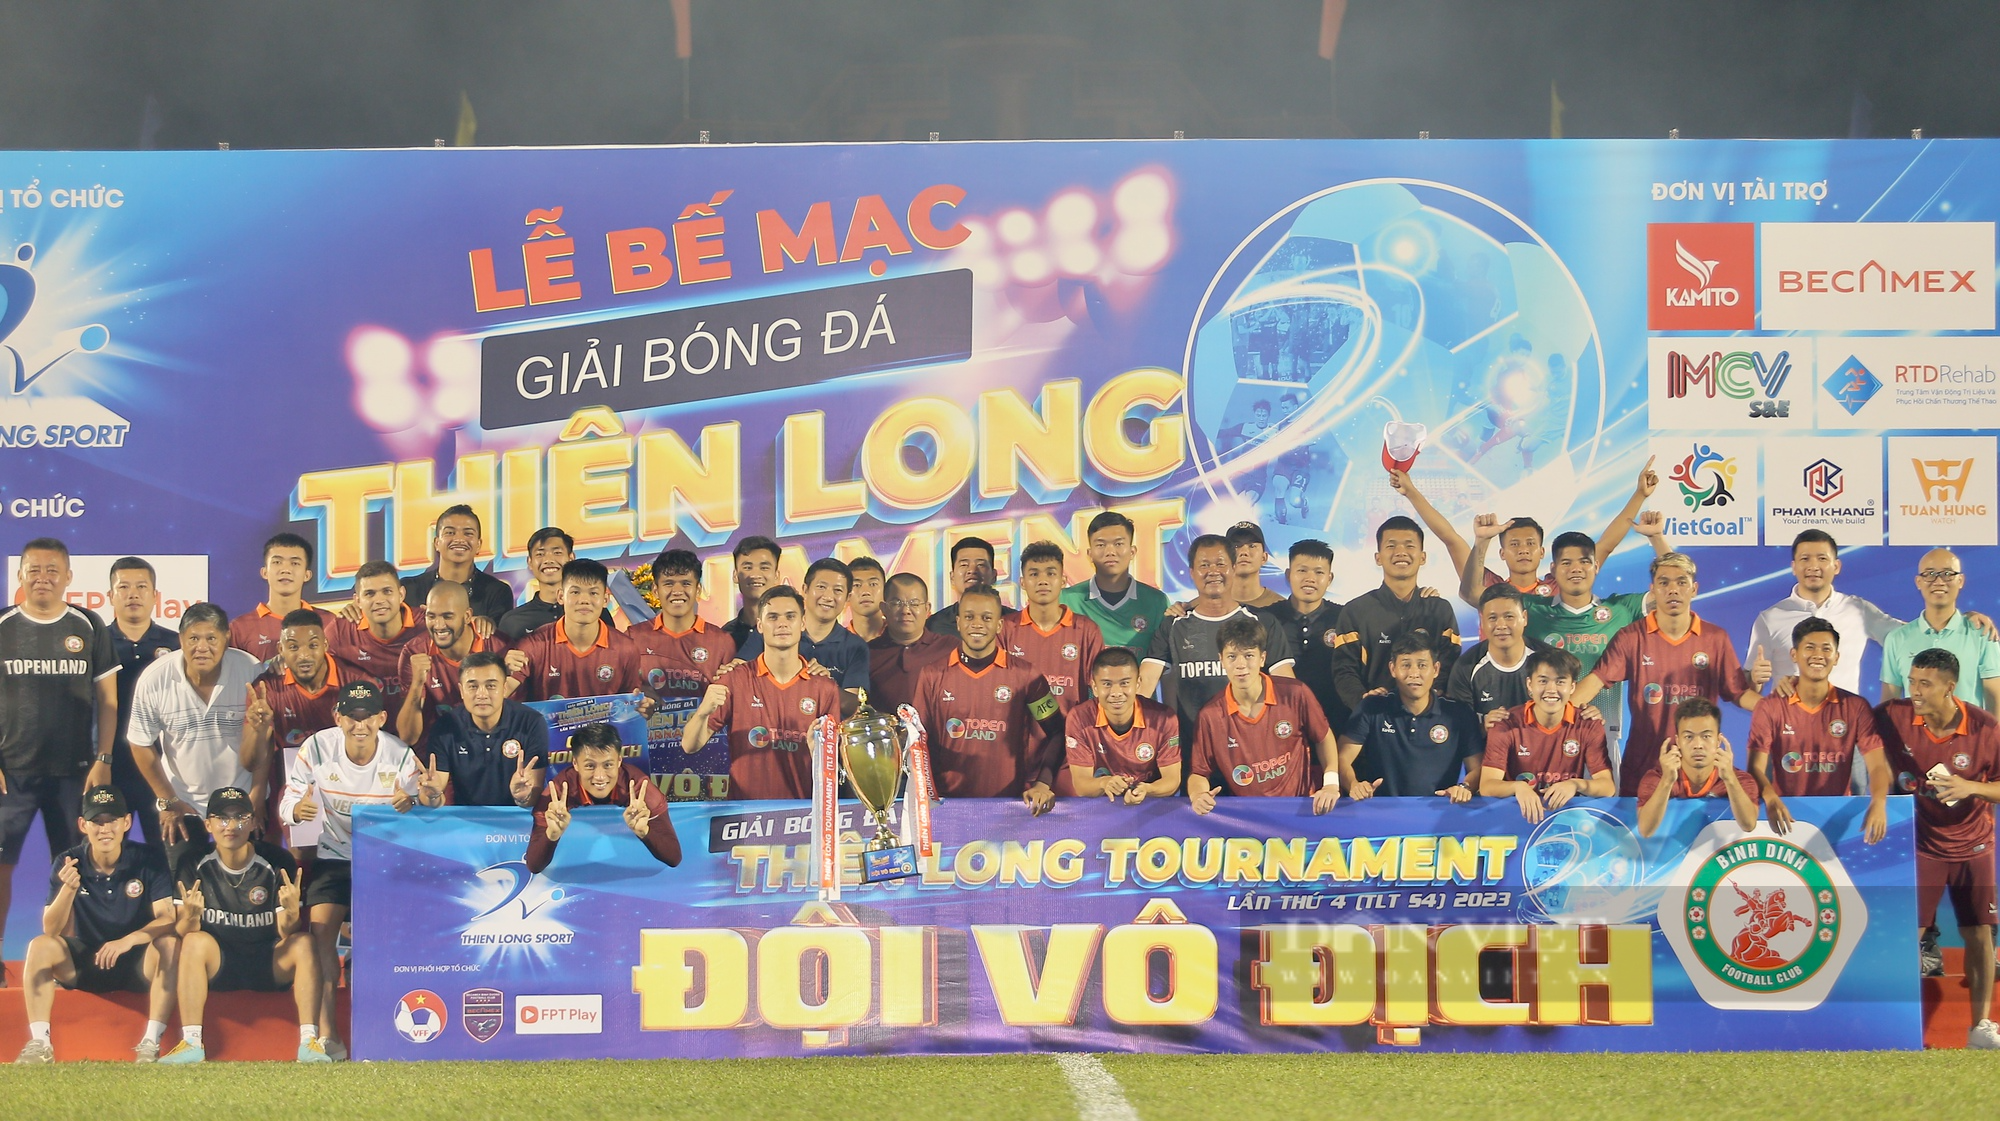 Topenland Bình Định vô địch Thiên Long Tournament 2023  - Ảnh 4.